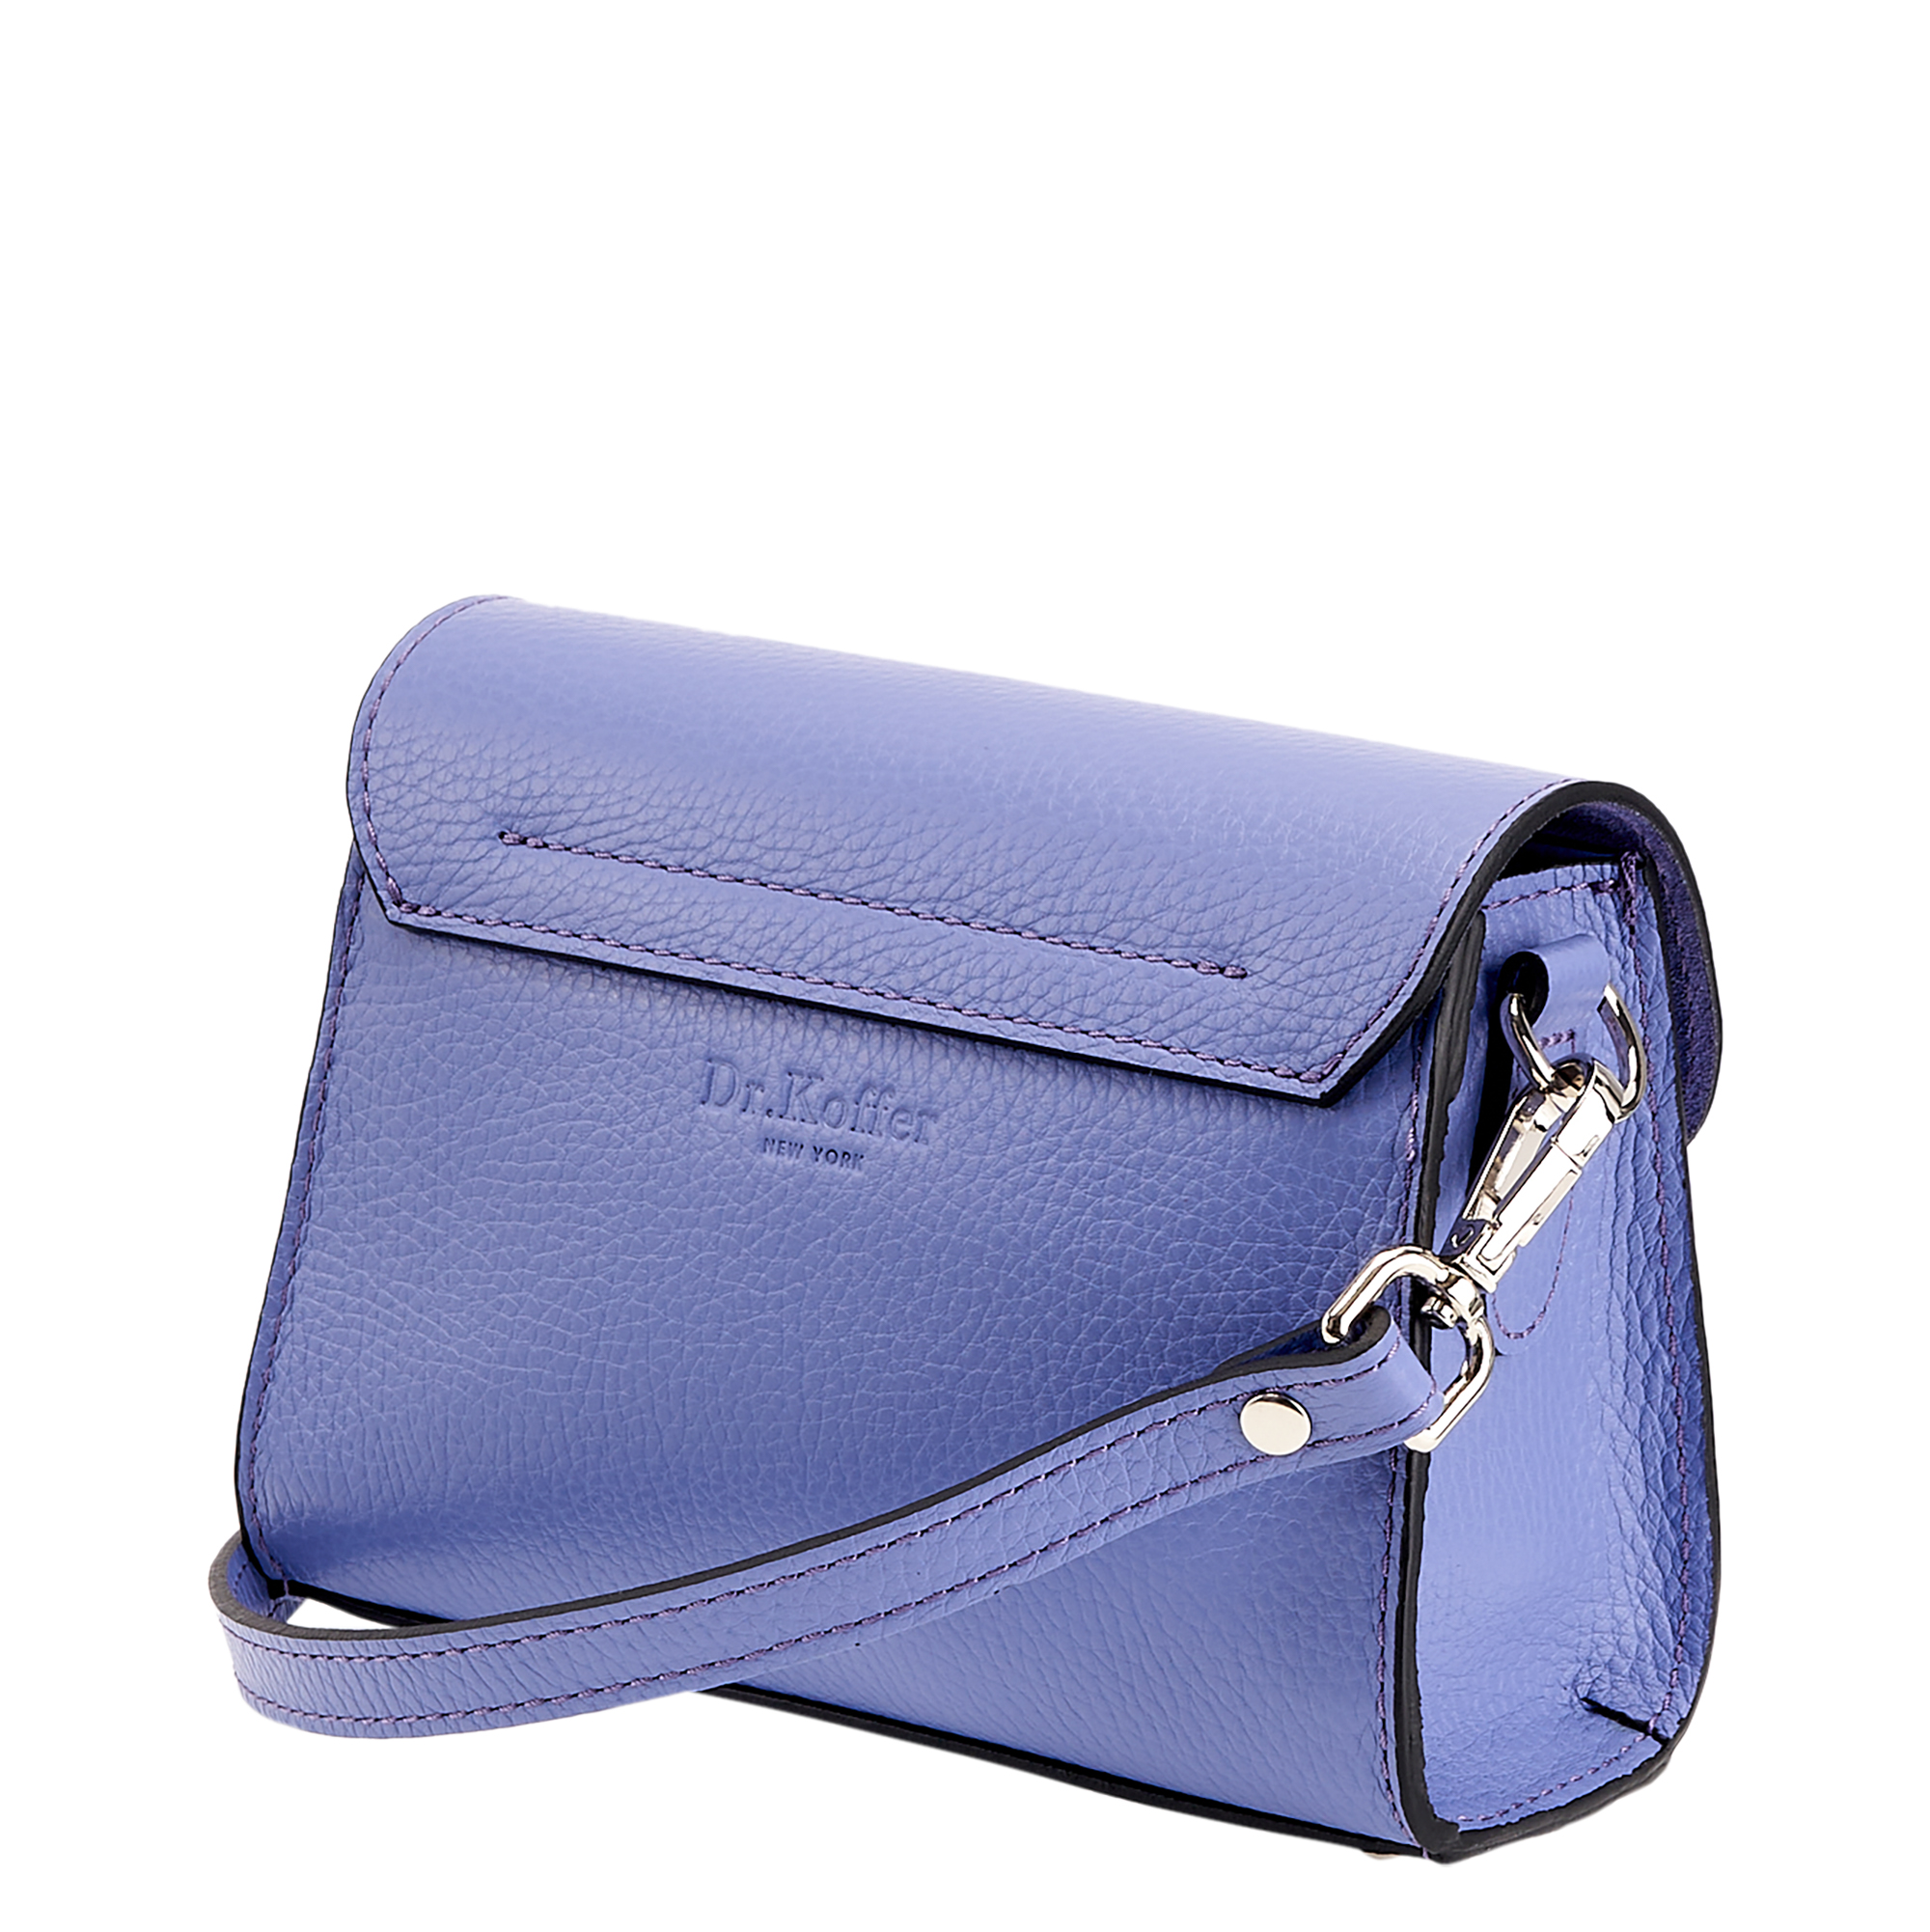 Др.Коффер 50731S-74 сумка женская, цвет фиолетовый - фото 6